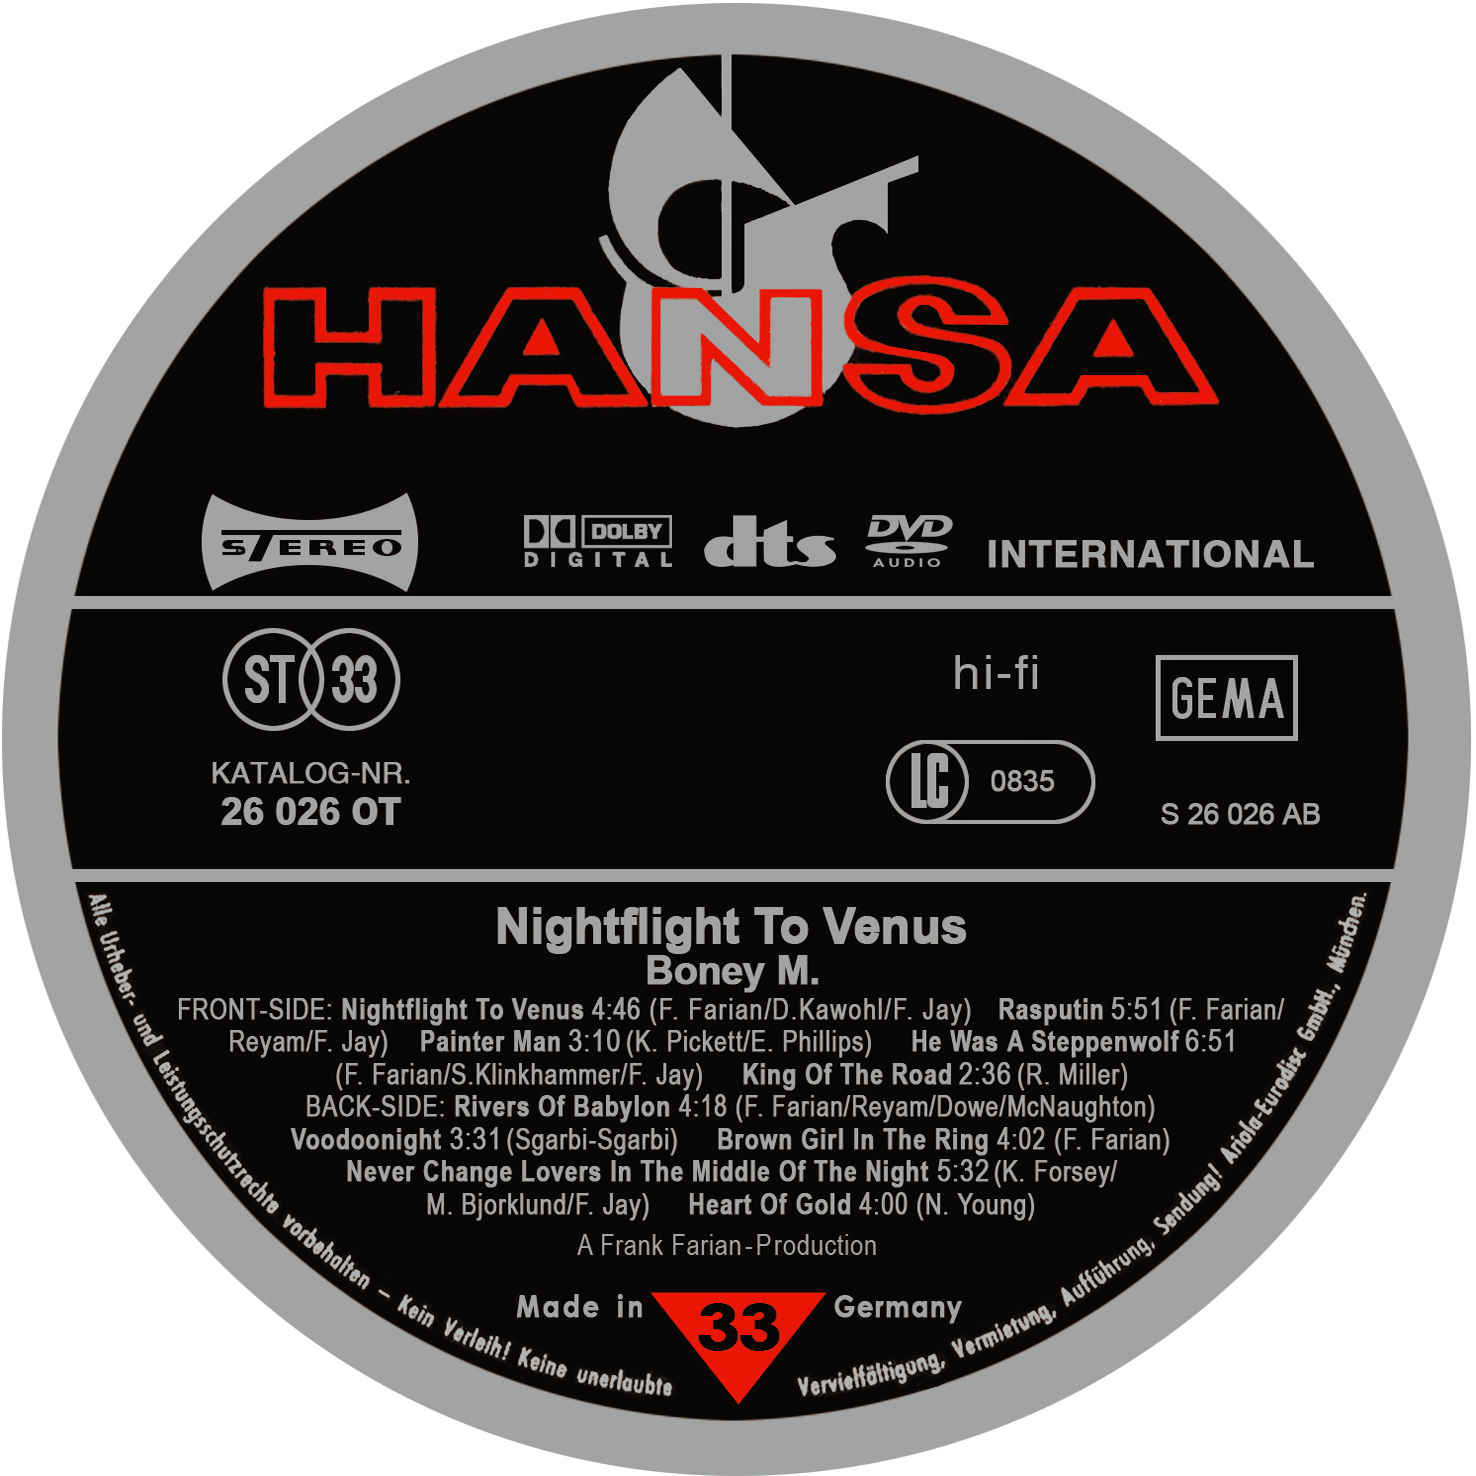 Boney m nightflight. Boney m – Nightflight to Venus. Nightflight to Venus. Boney m Nightflight to Venus плакаты. CD Boney m Nightflight to Venus back.